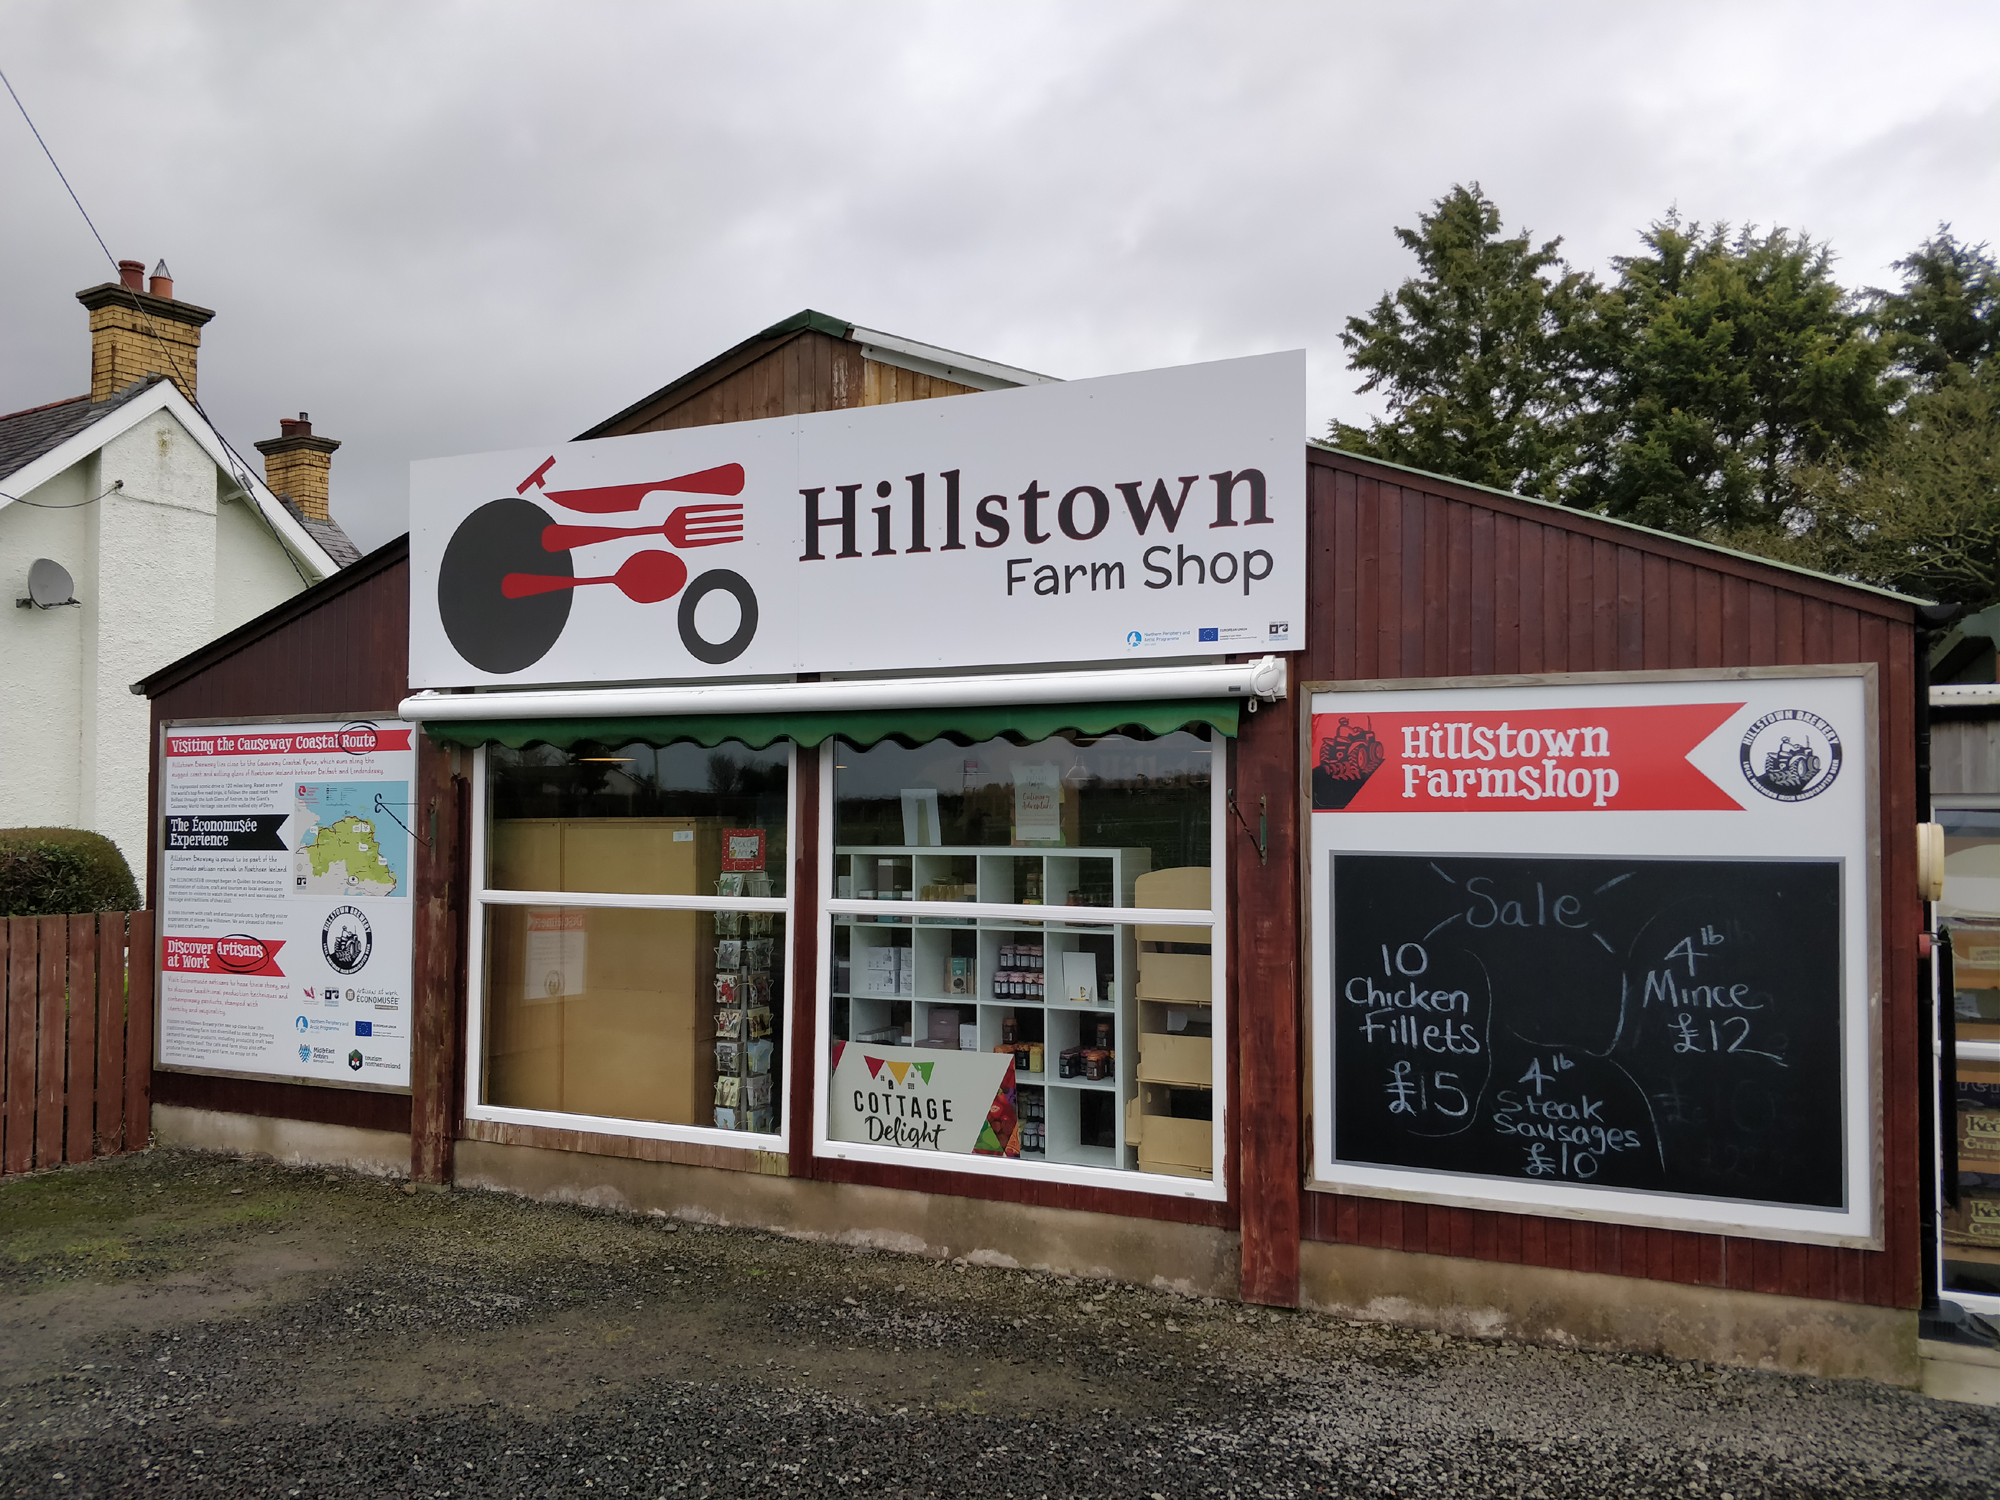 Award-winning Hillstown Farm Shop and Café